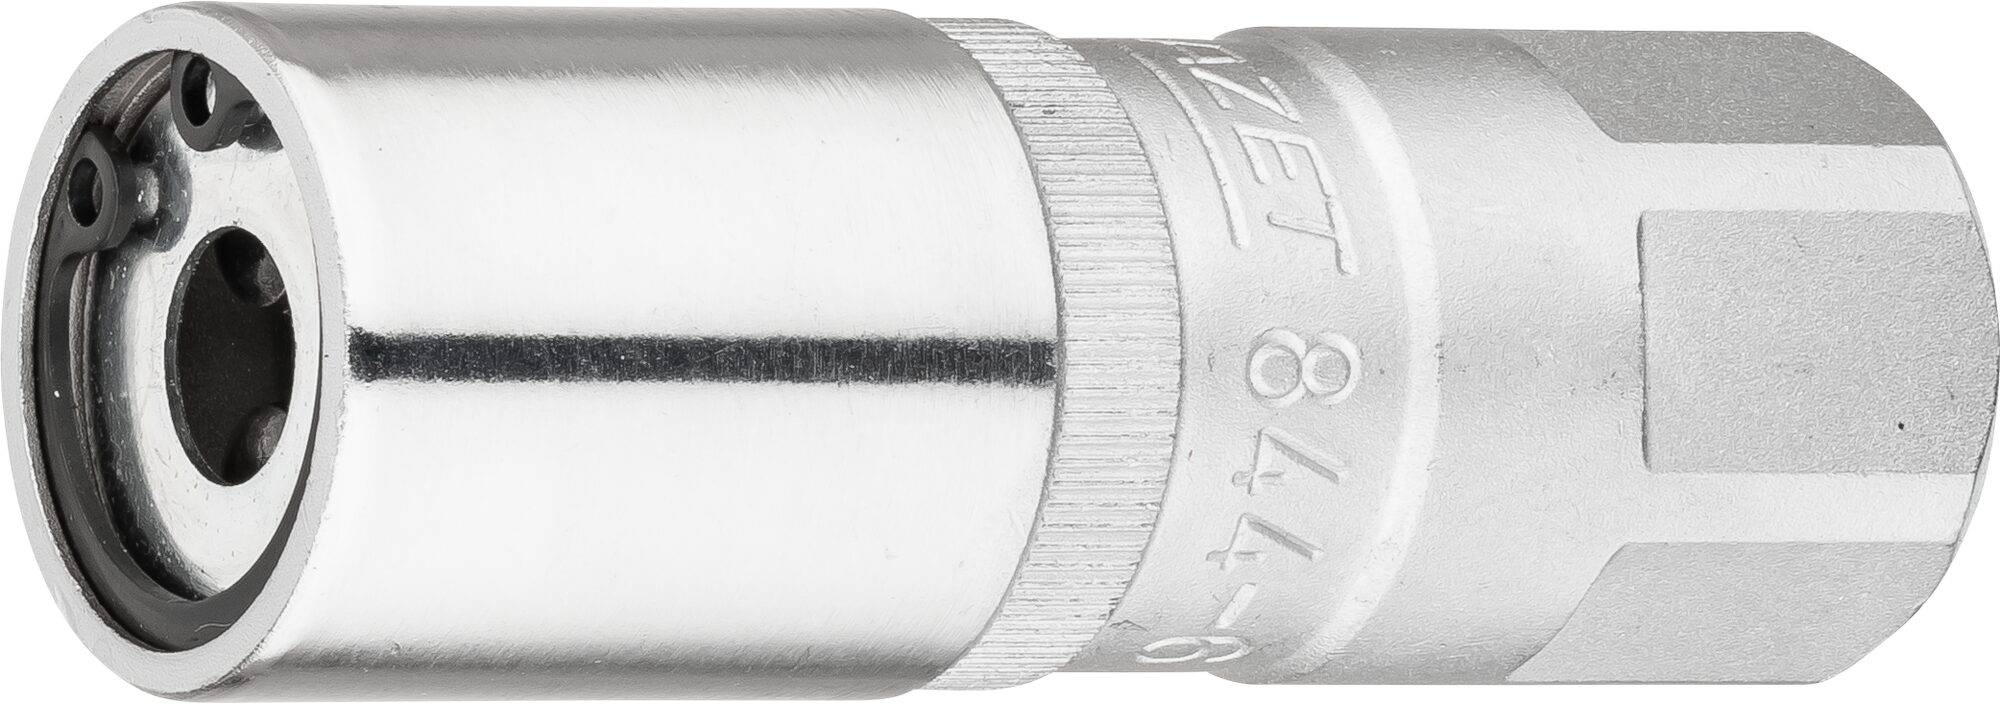 HAZET Stehbolzen-Ausdreher 844-6 · Vierkant hohl 12,5 mm (1/2 Zoll) · 23 mm